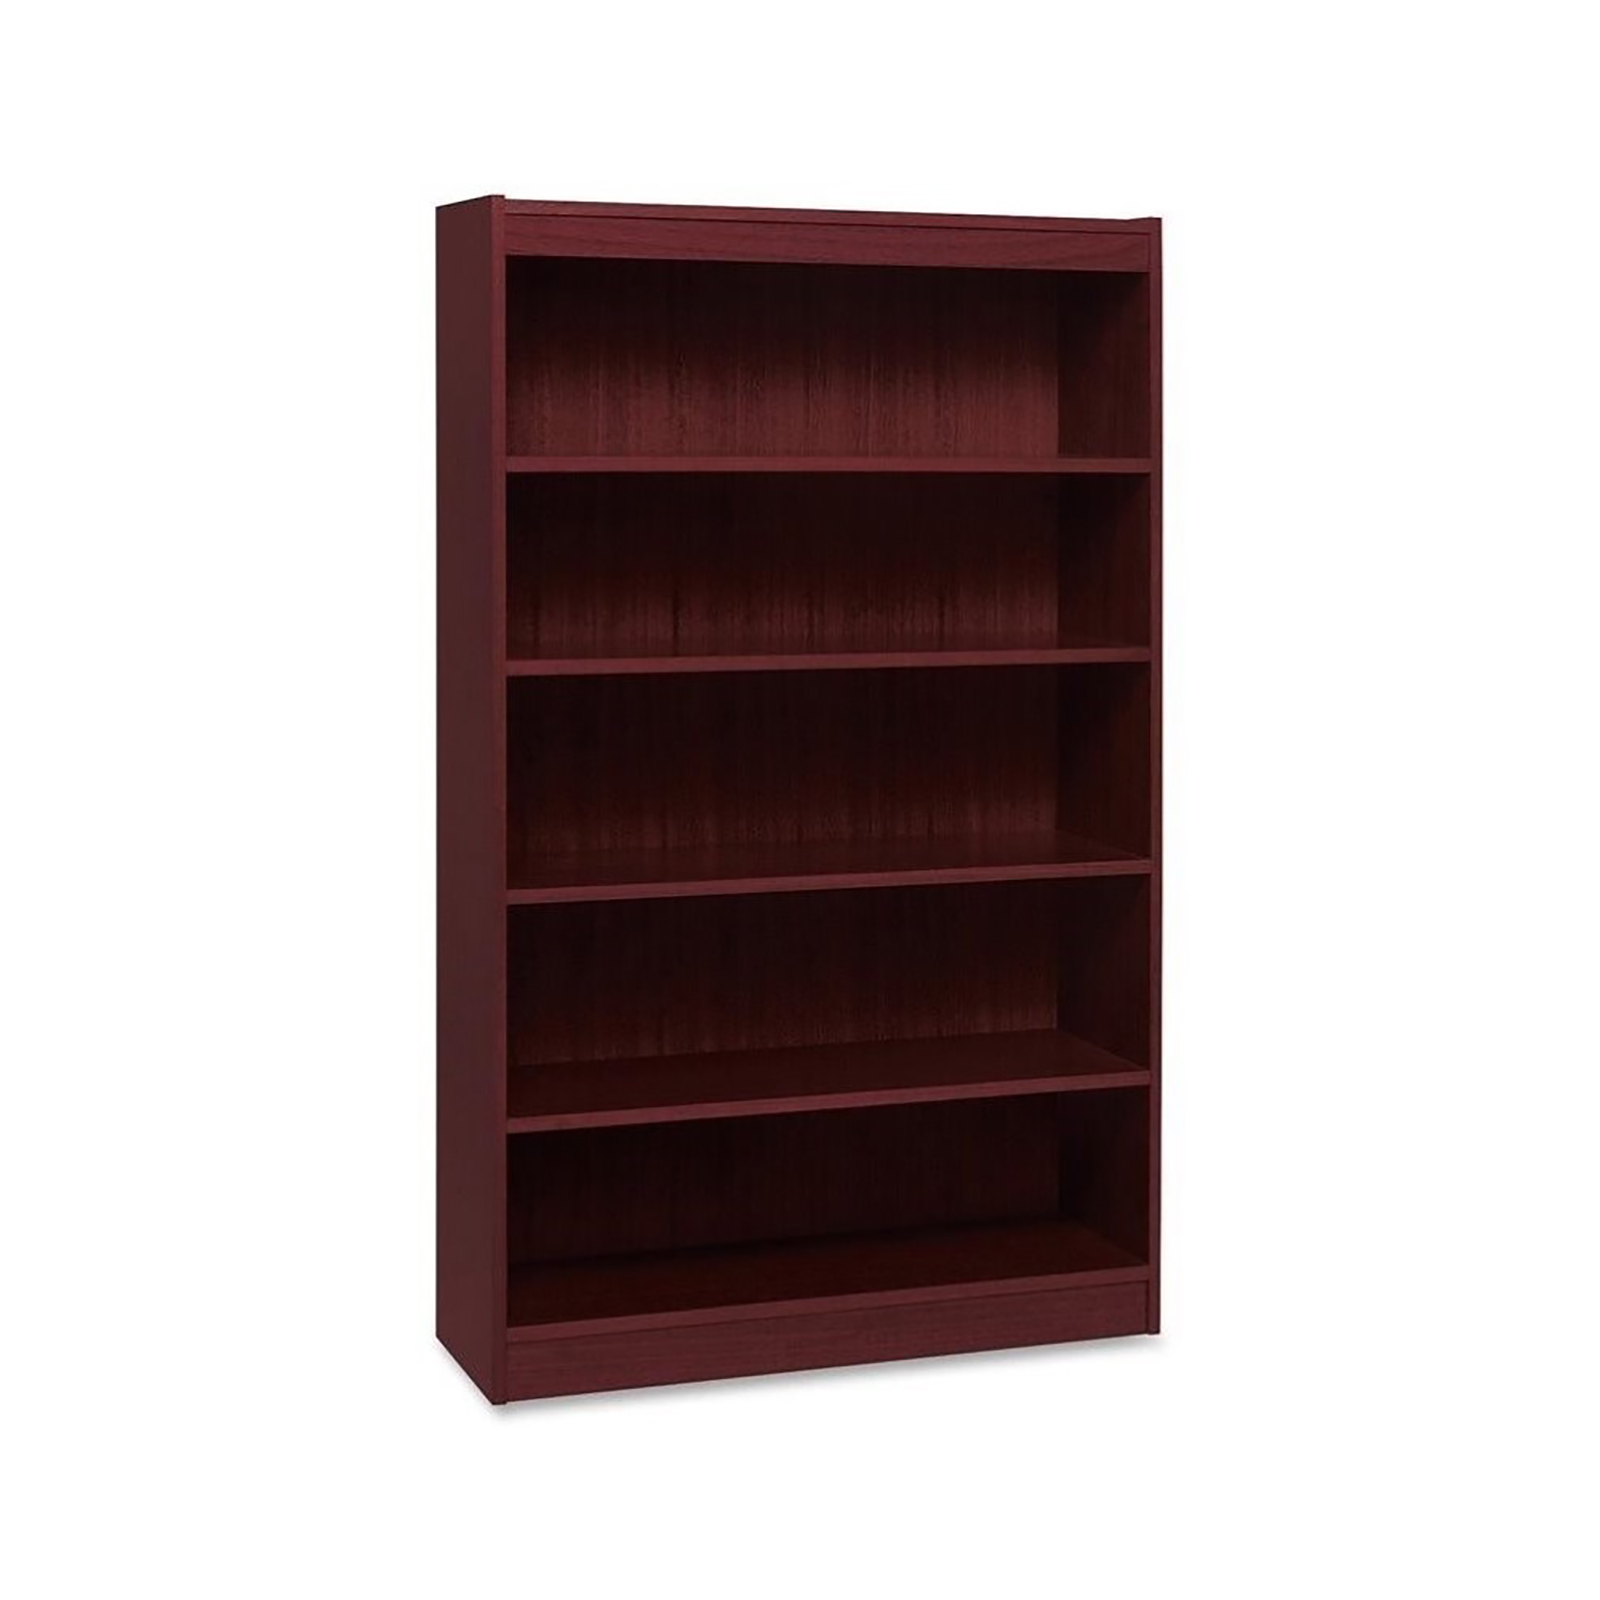 Lorell 5-Shelf Panel Bookcase - Mahogany